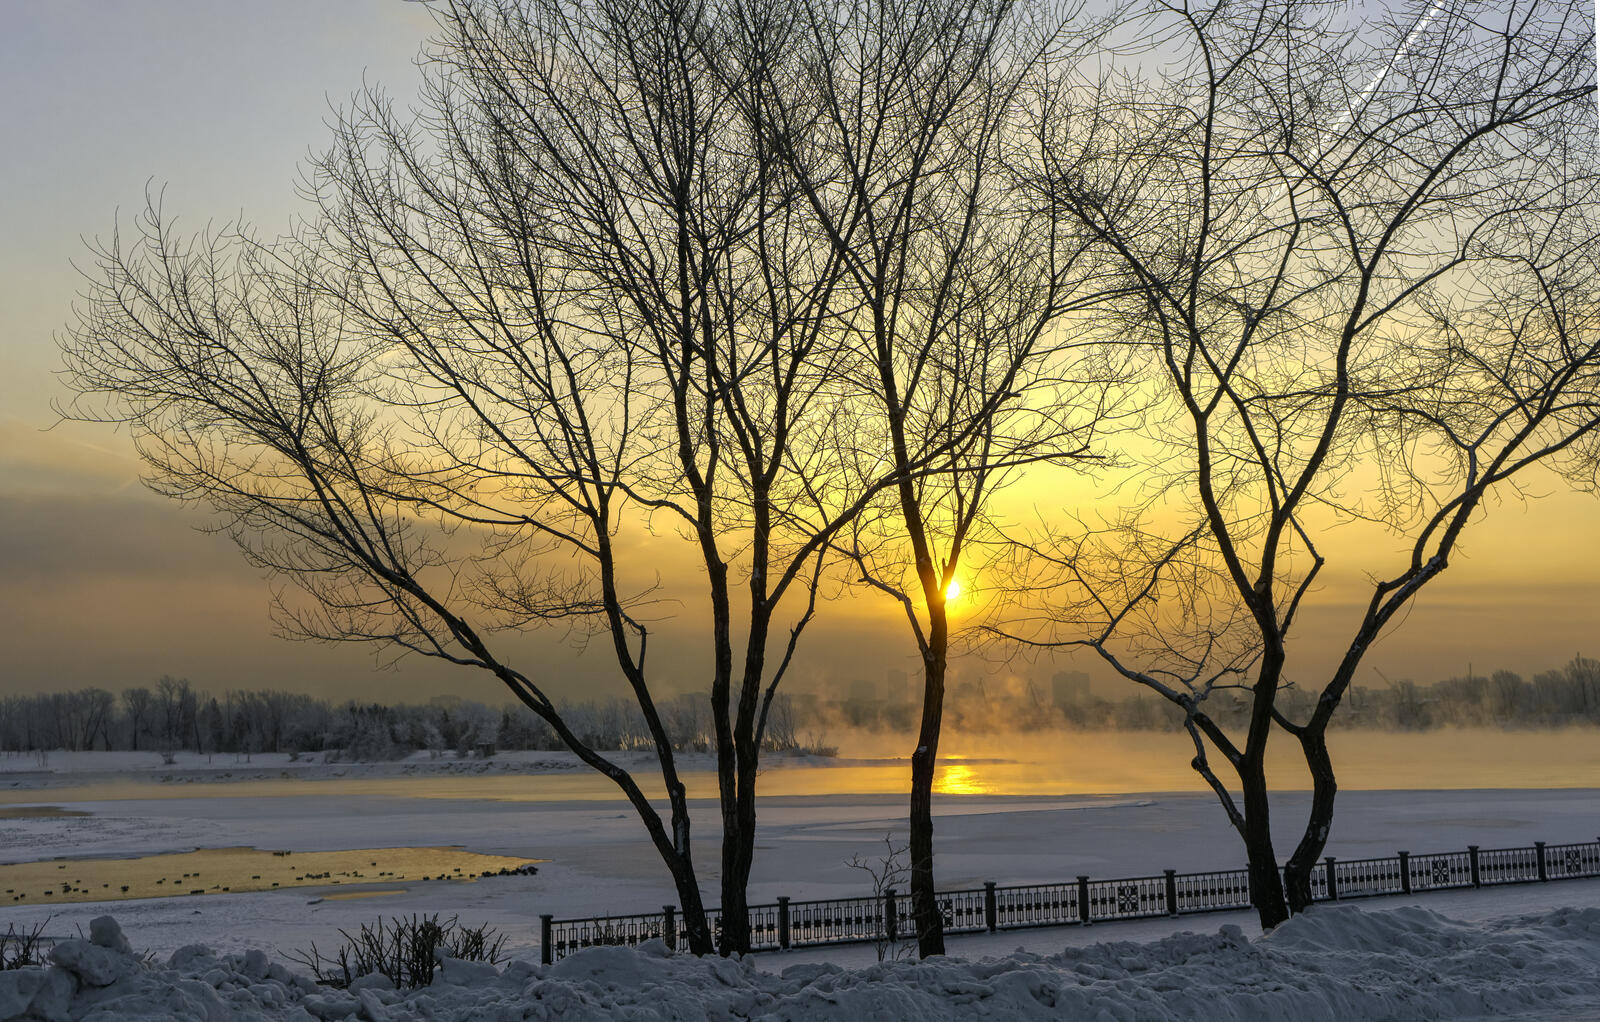 免费照片通过叶尼塞河岸边的树木看到的日出